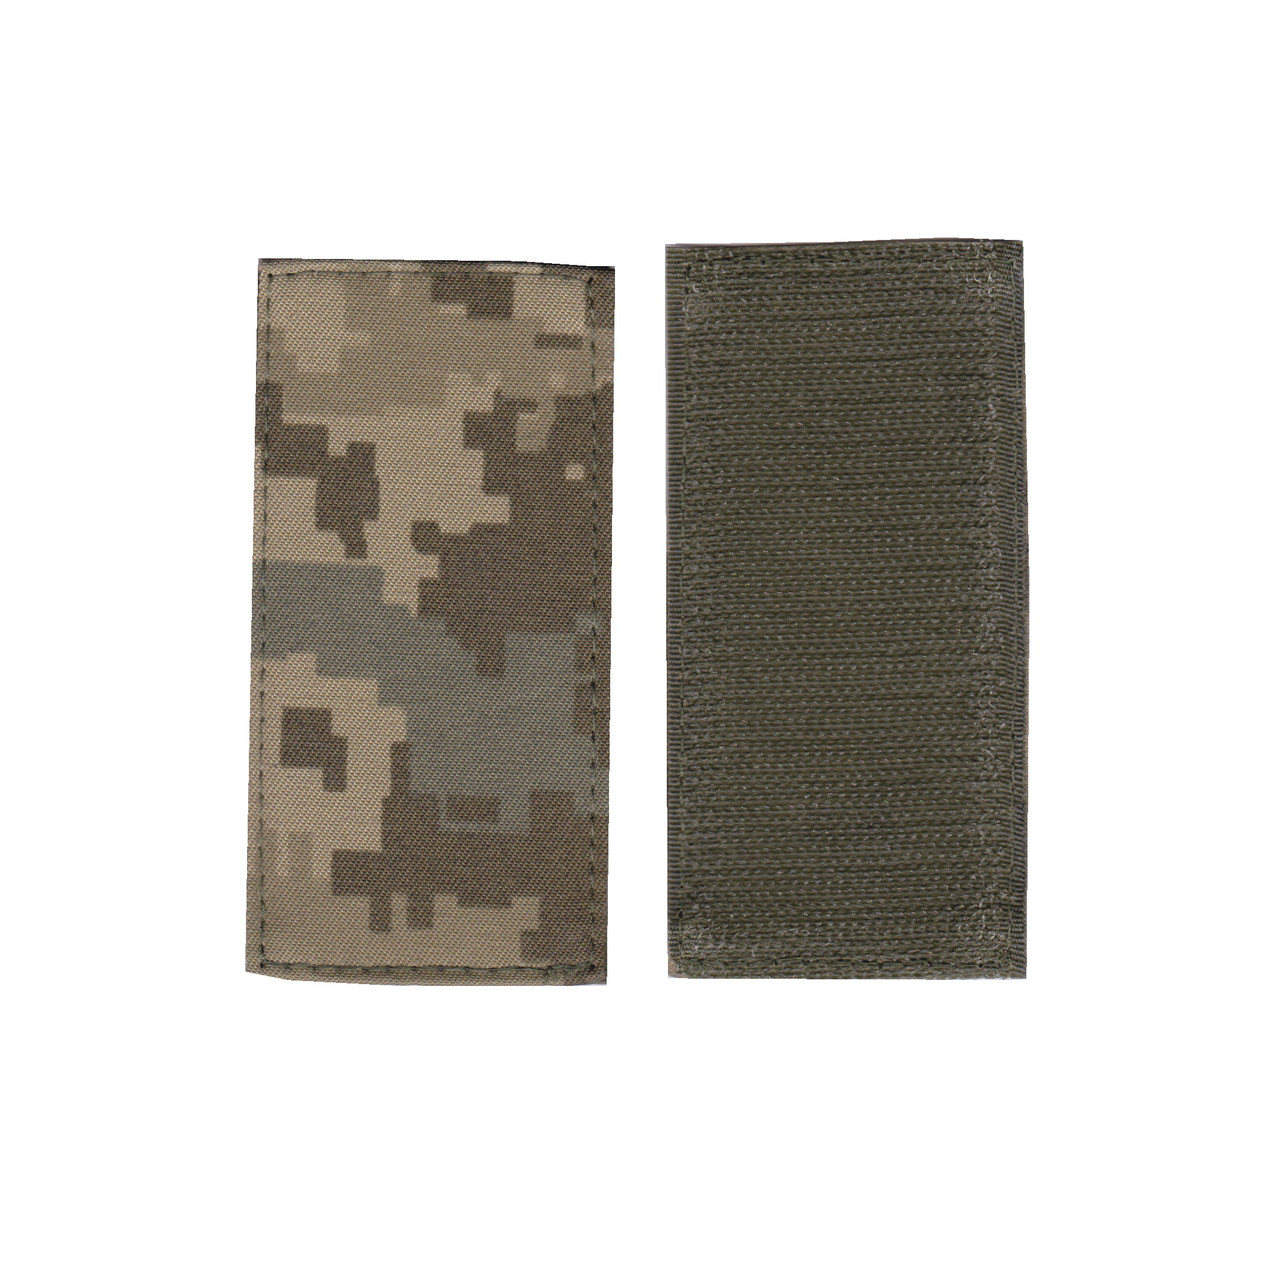 Погон рядового солдата військовий / армійський шеврон ЗСУ, чорний колір на пікселі. 10 см * 5 см